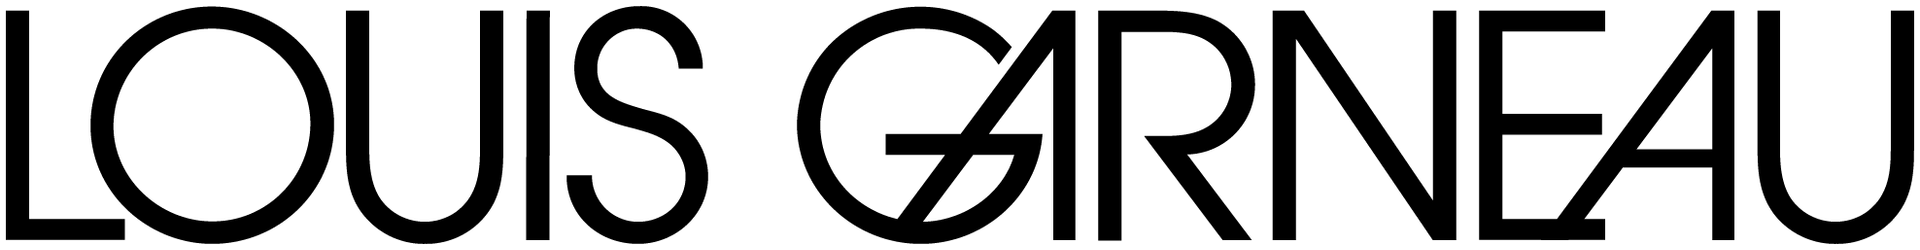 LOUIS GARNEAU logo de circulaire